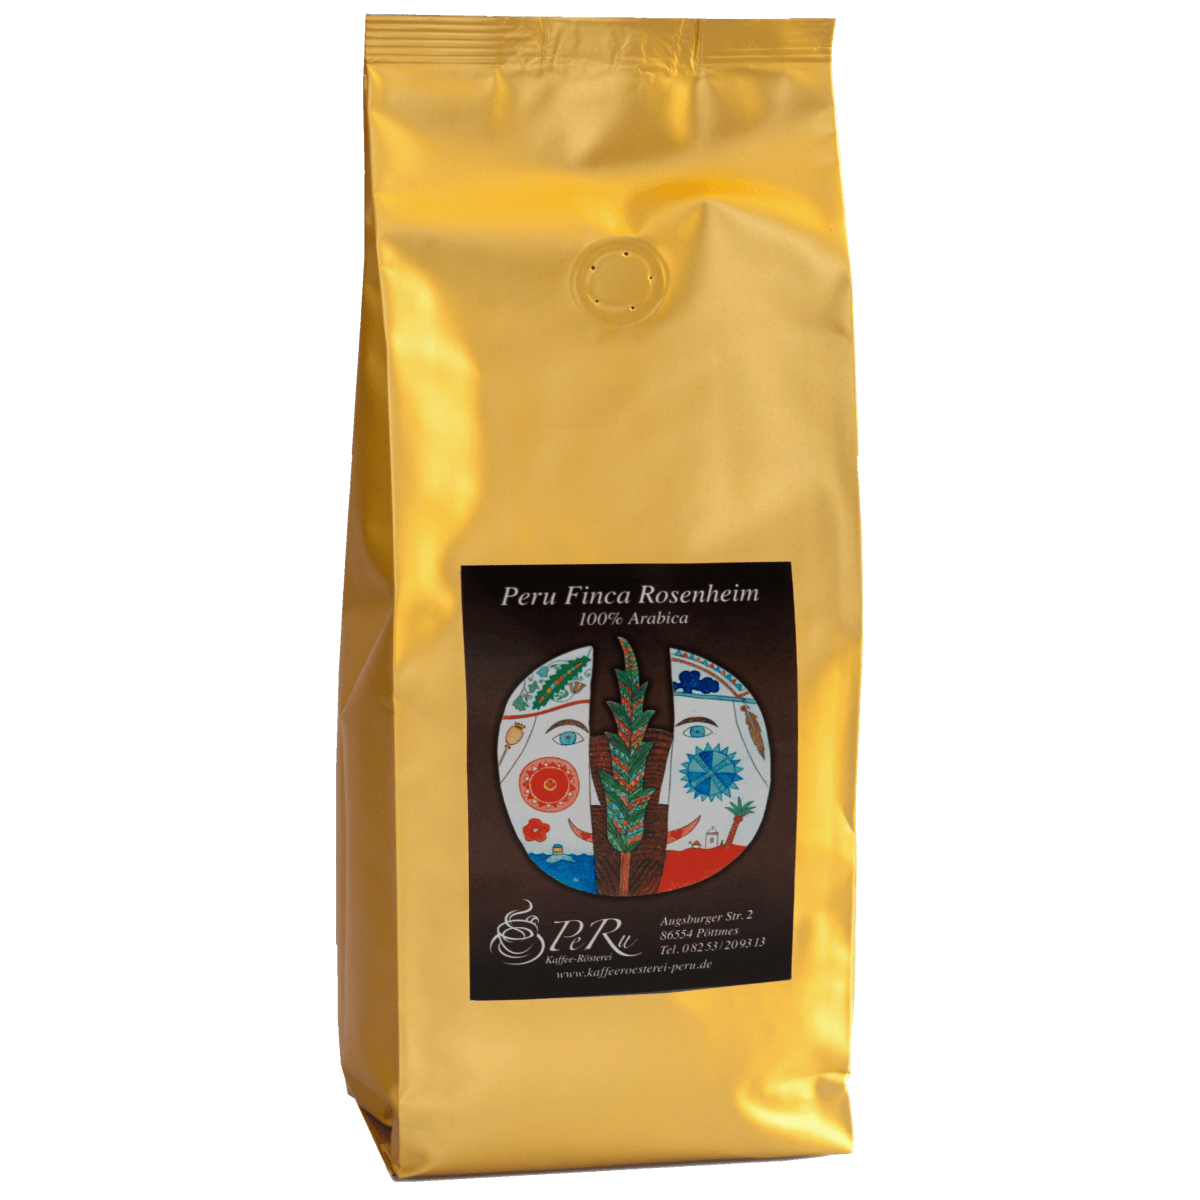 Kaffee "Peru Finca Rosenheim" in goldenem Beutel, 100% Arabica